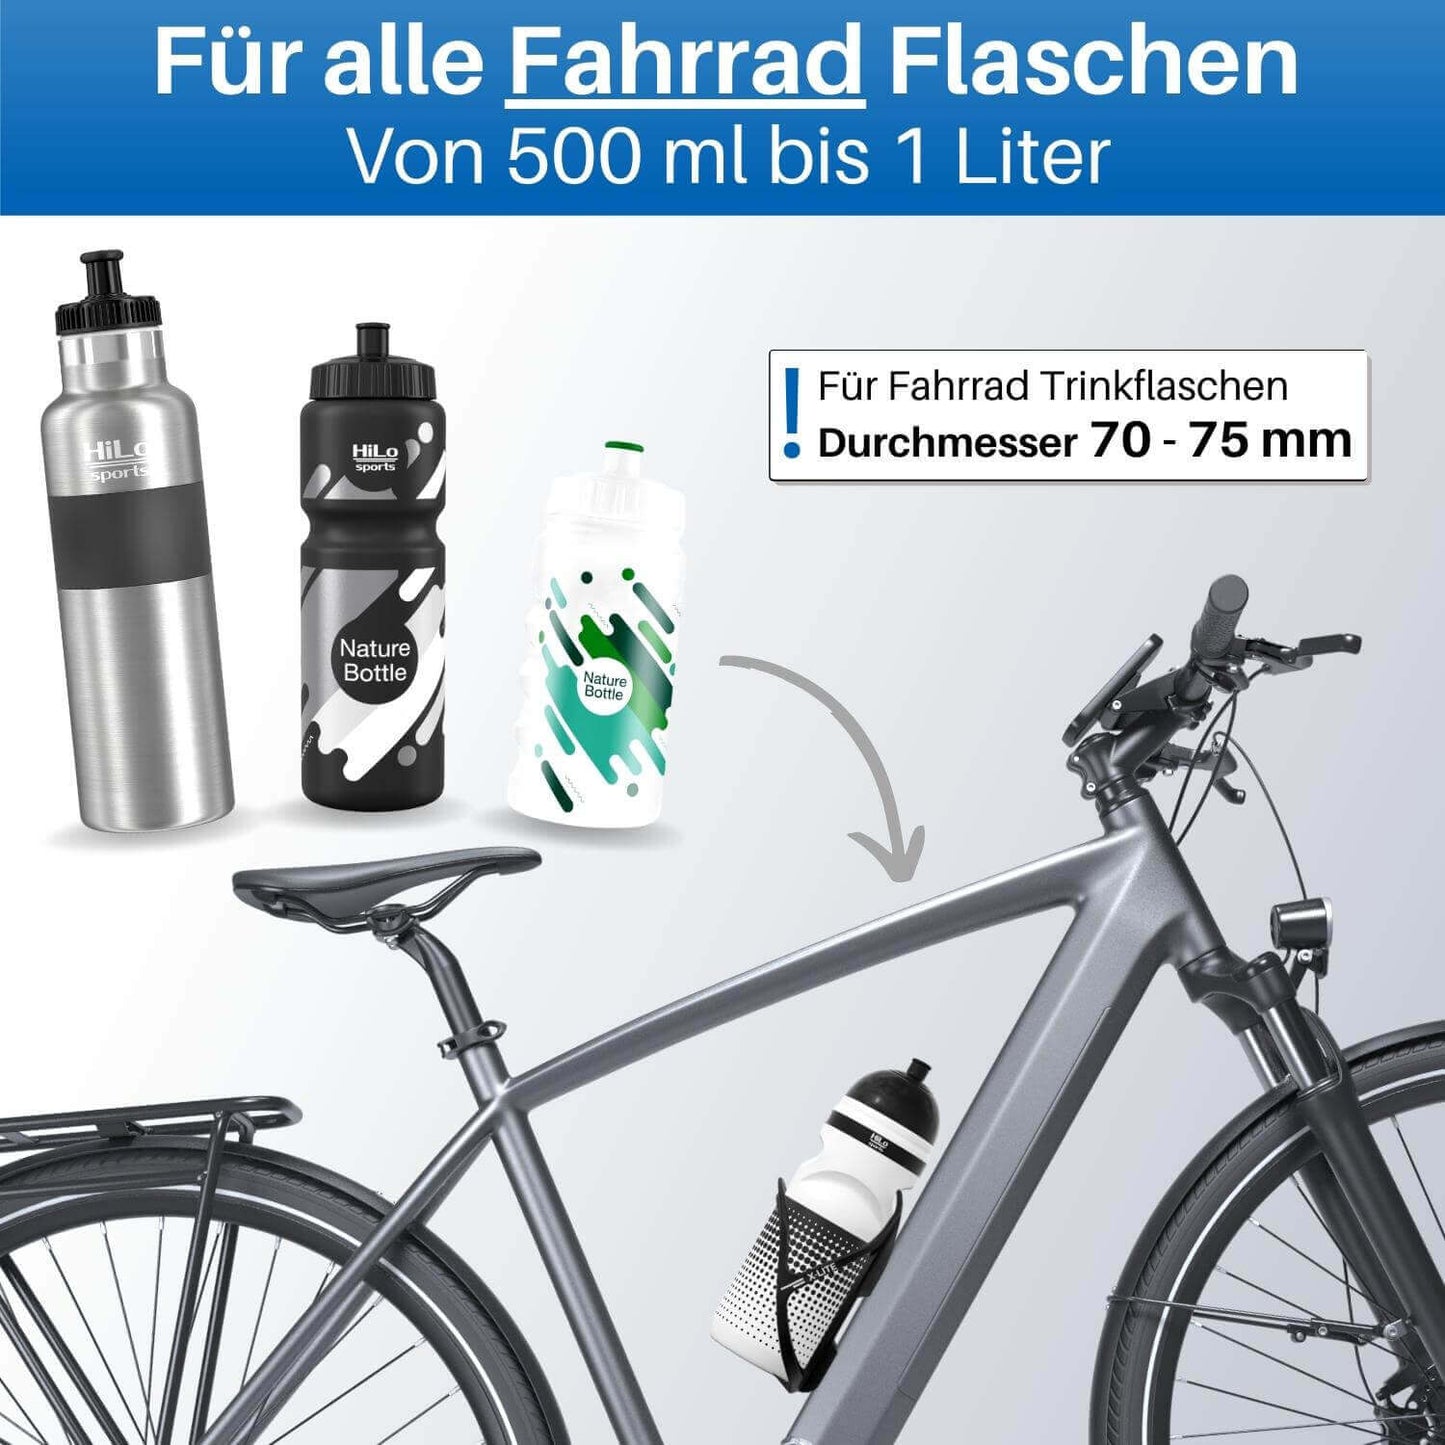 Jede Fahrrad Trinkflasche passt in den Fahrrad Flaschenhalter.